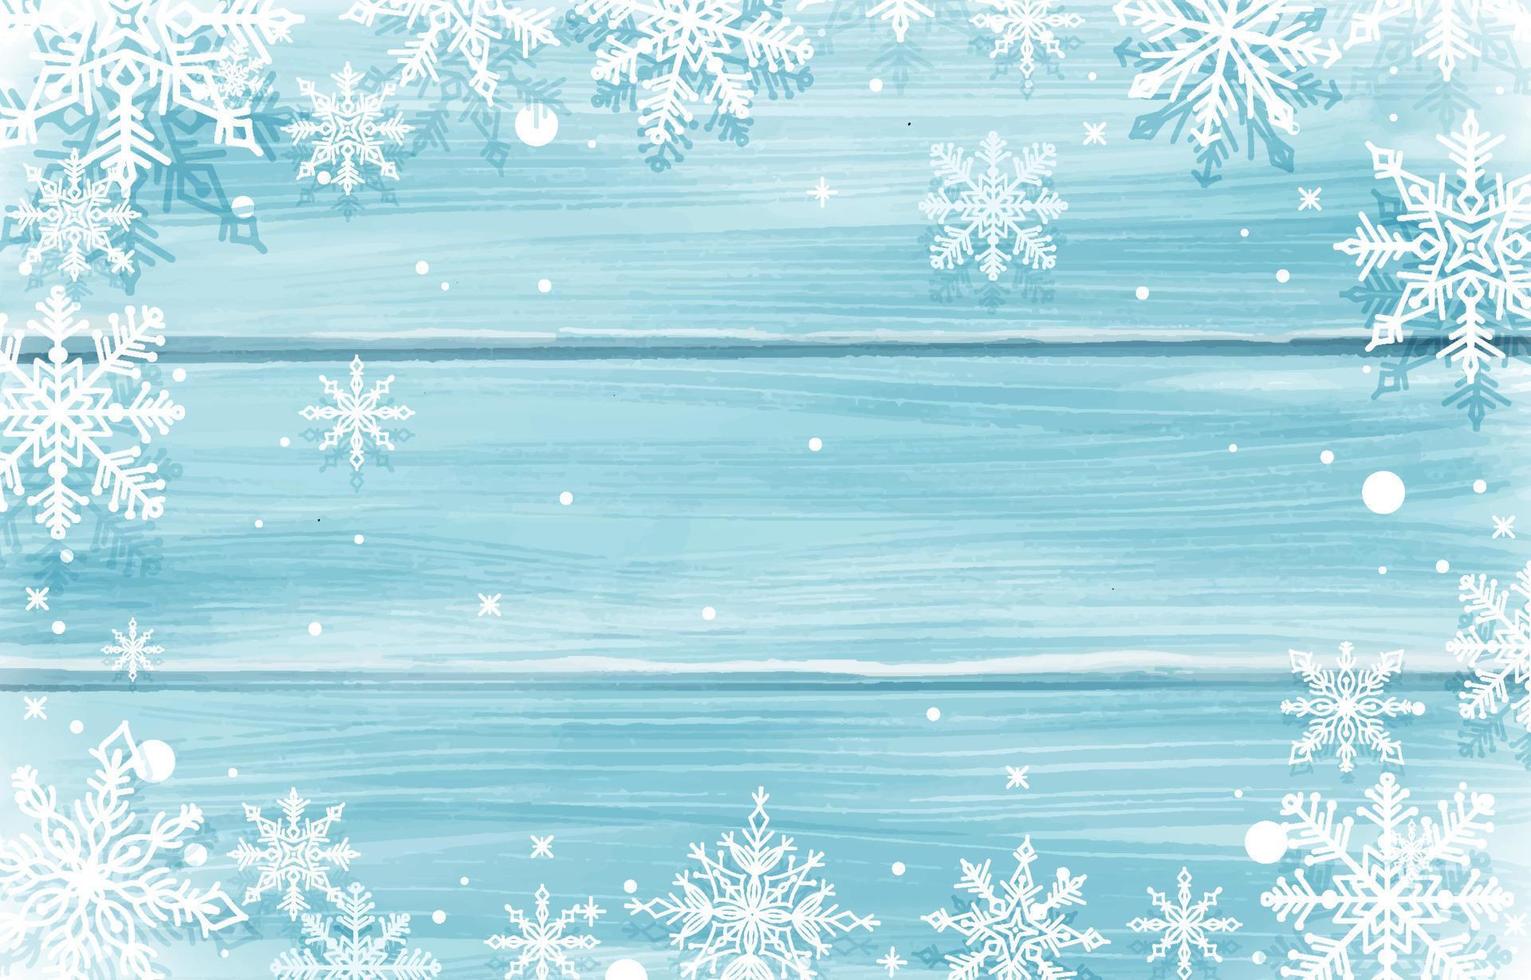 flocos de neve com placa de madeira no tema de inverno vetor